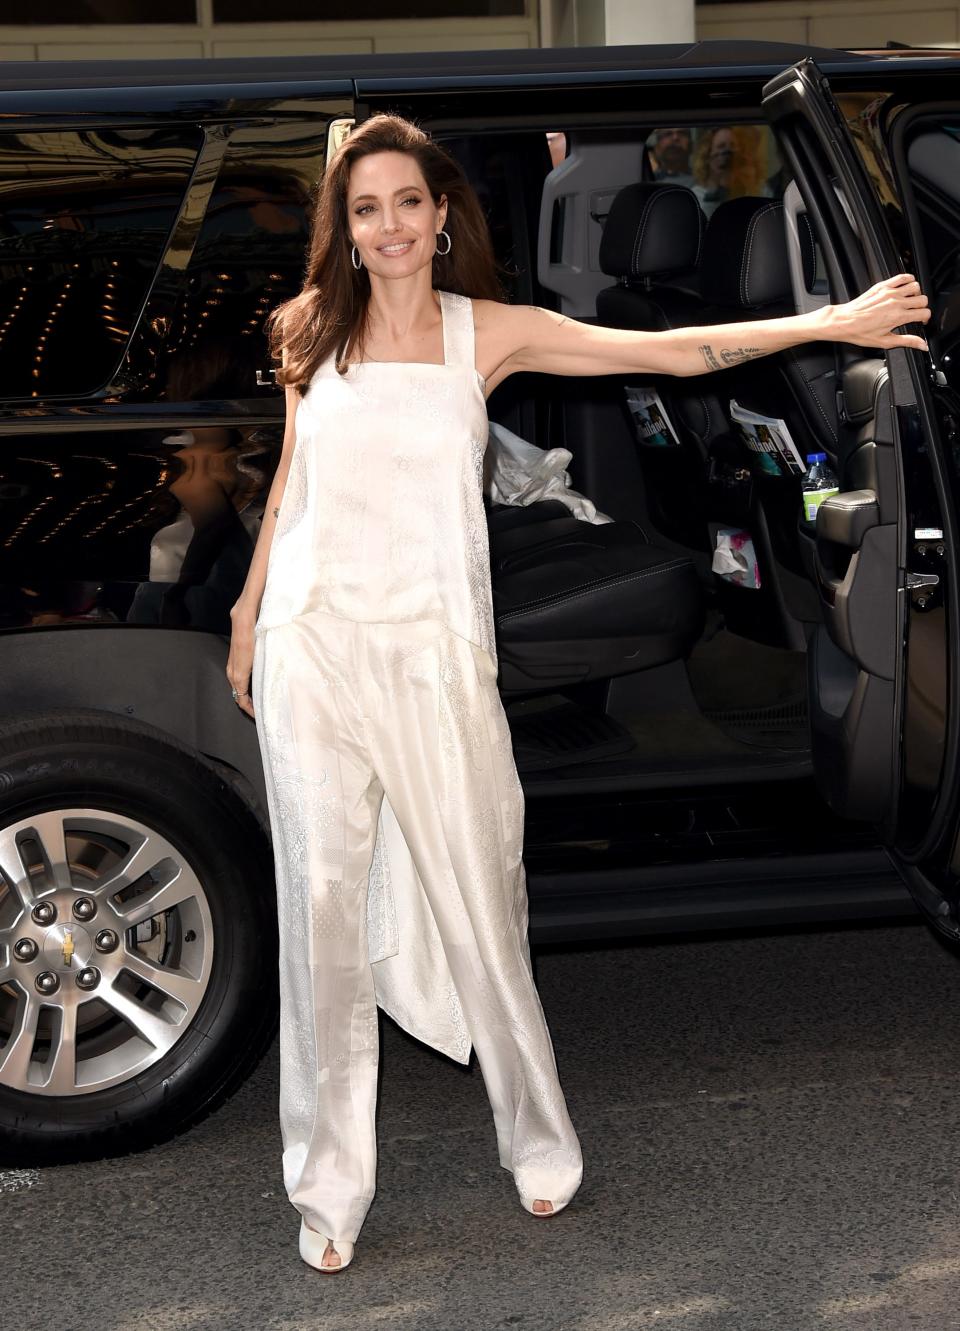 Angelina Jolie attends "The Breadwinner" premiere